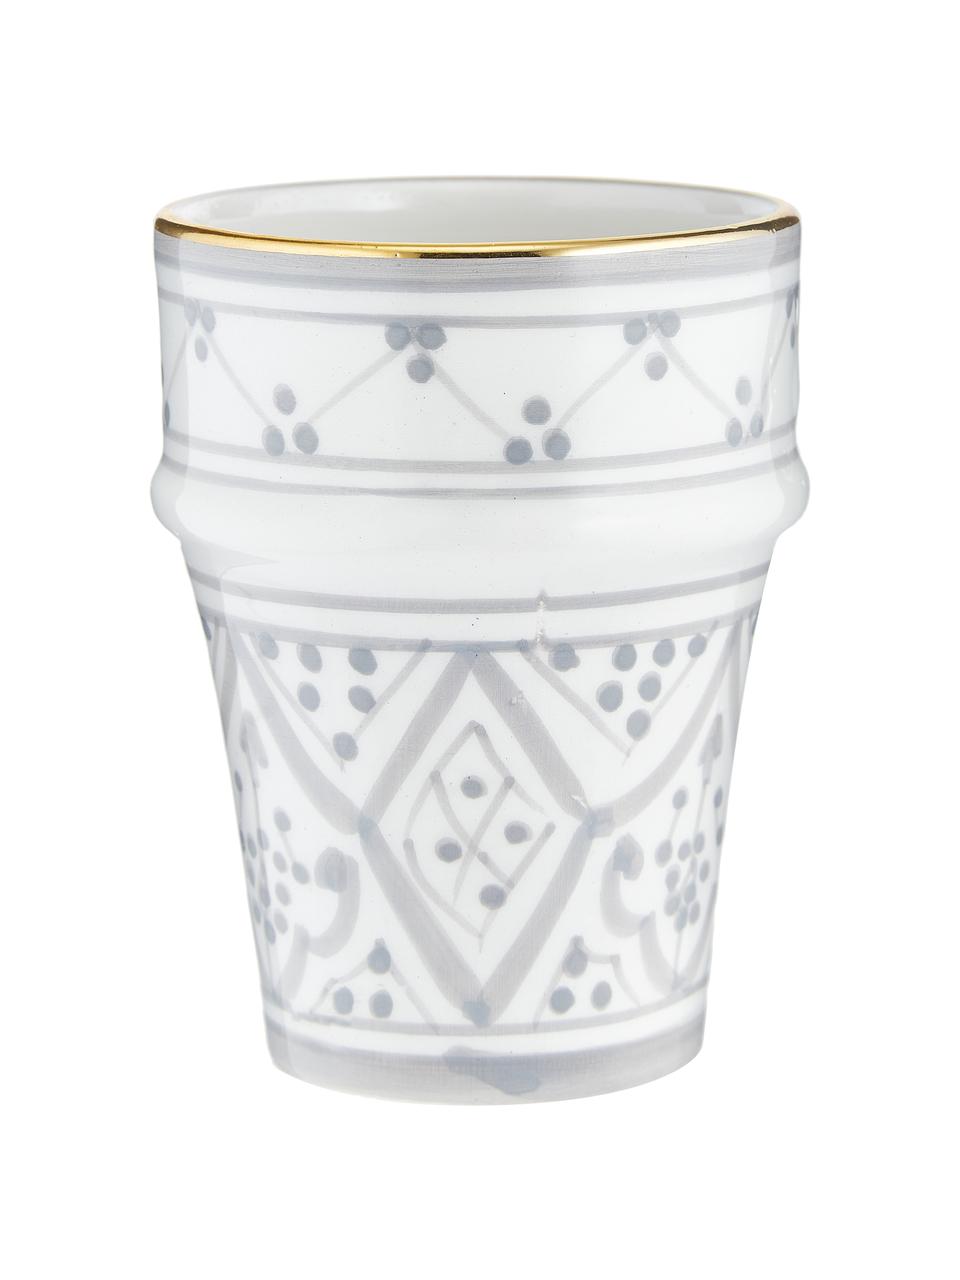 Ručně vyrobený marocký pohárek Beldi, Keramika, Světle šedá, krémová, zlatá, Ø 8 cm, V 11 cm, 300 ml